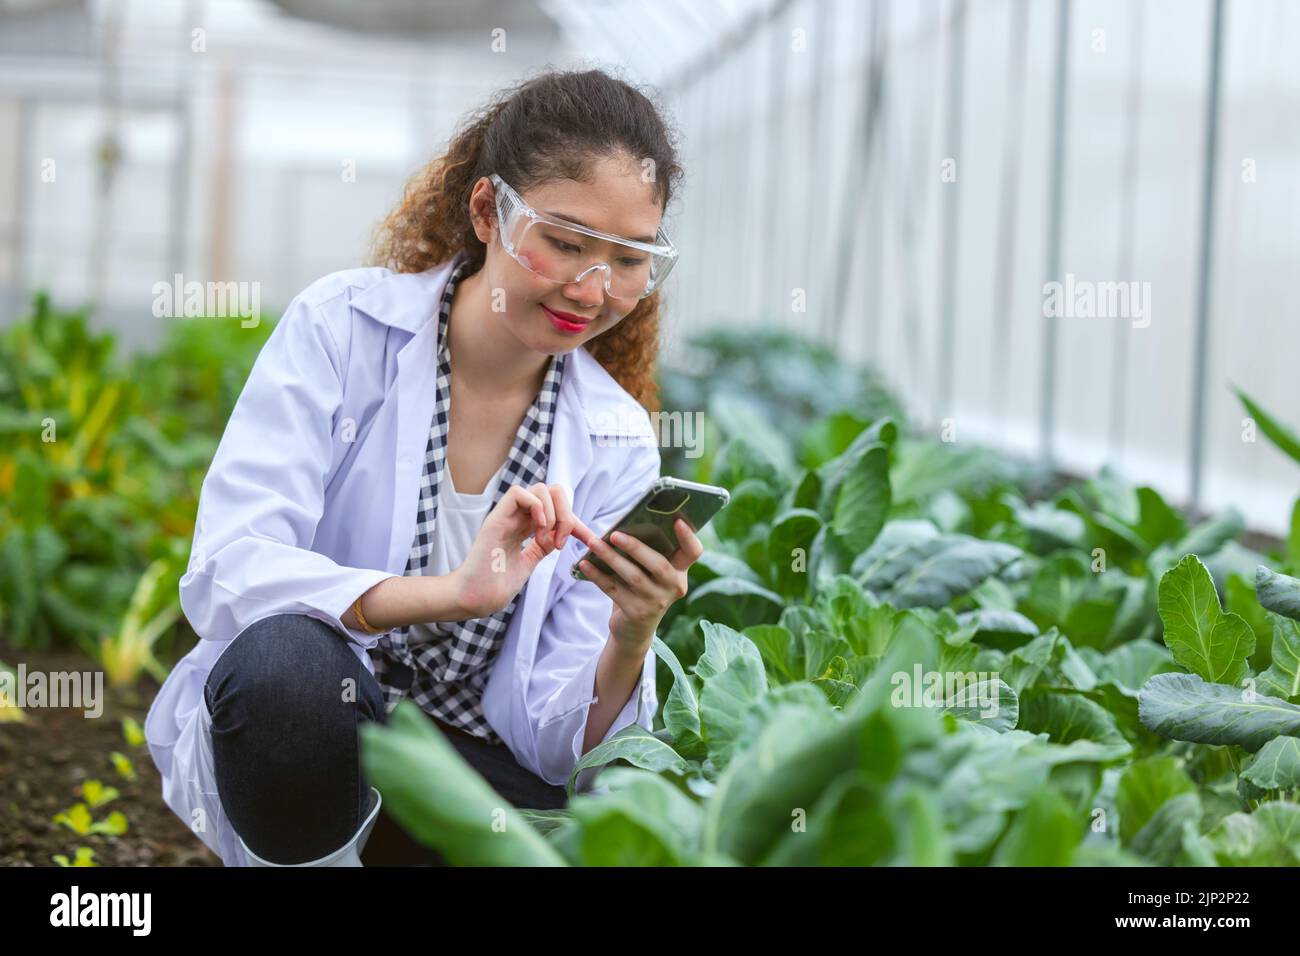 Wissenschaftler Frau Forscher Mitarbeiter sammeln Studie Pflanzeninformationen in der Landwirtschaft Bauernhof. Agrarwissenschaftliches Konzept. Stockfoto